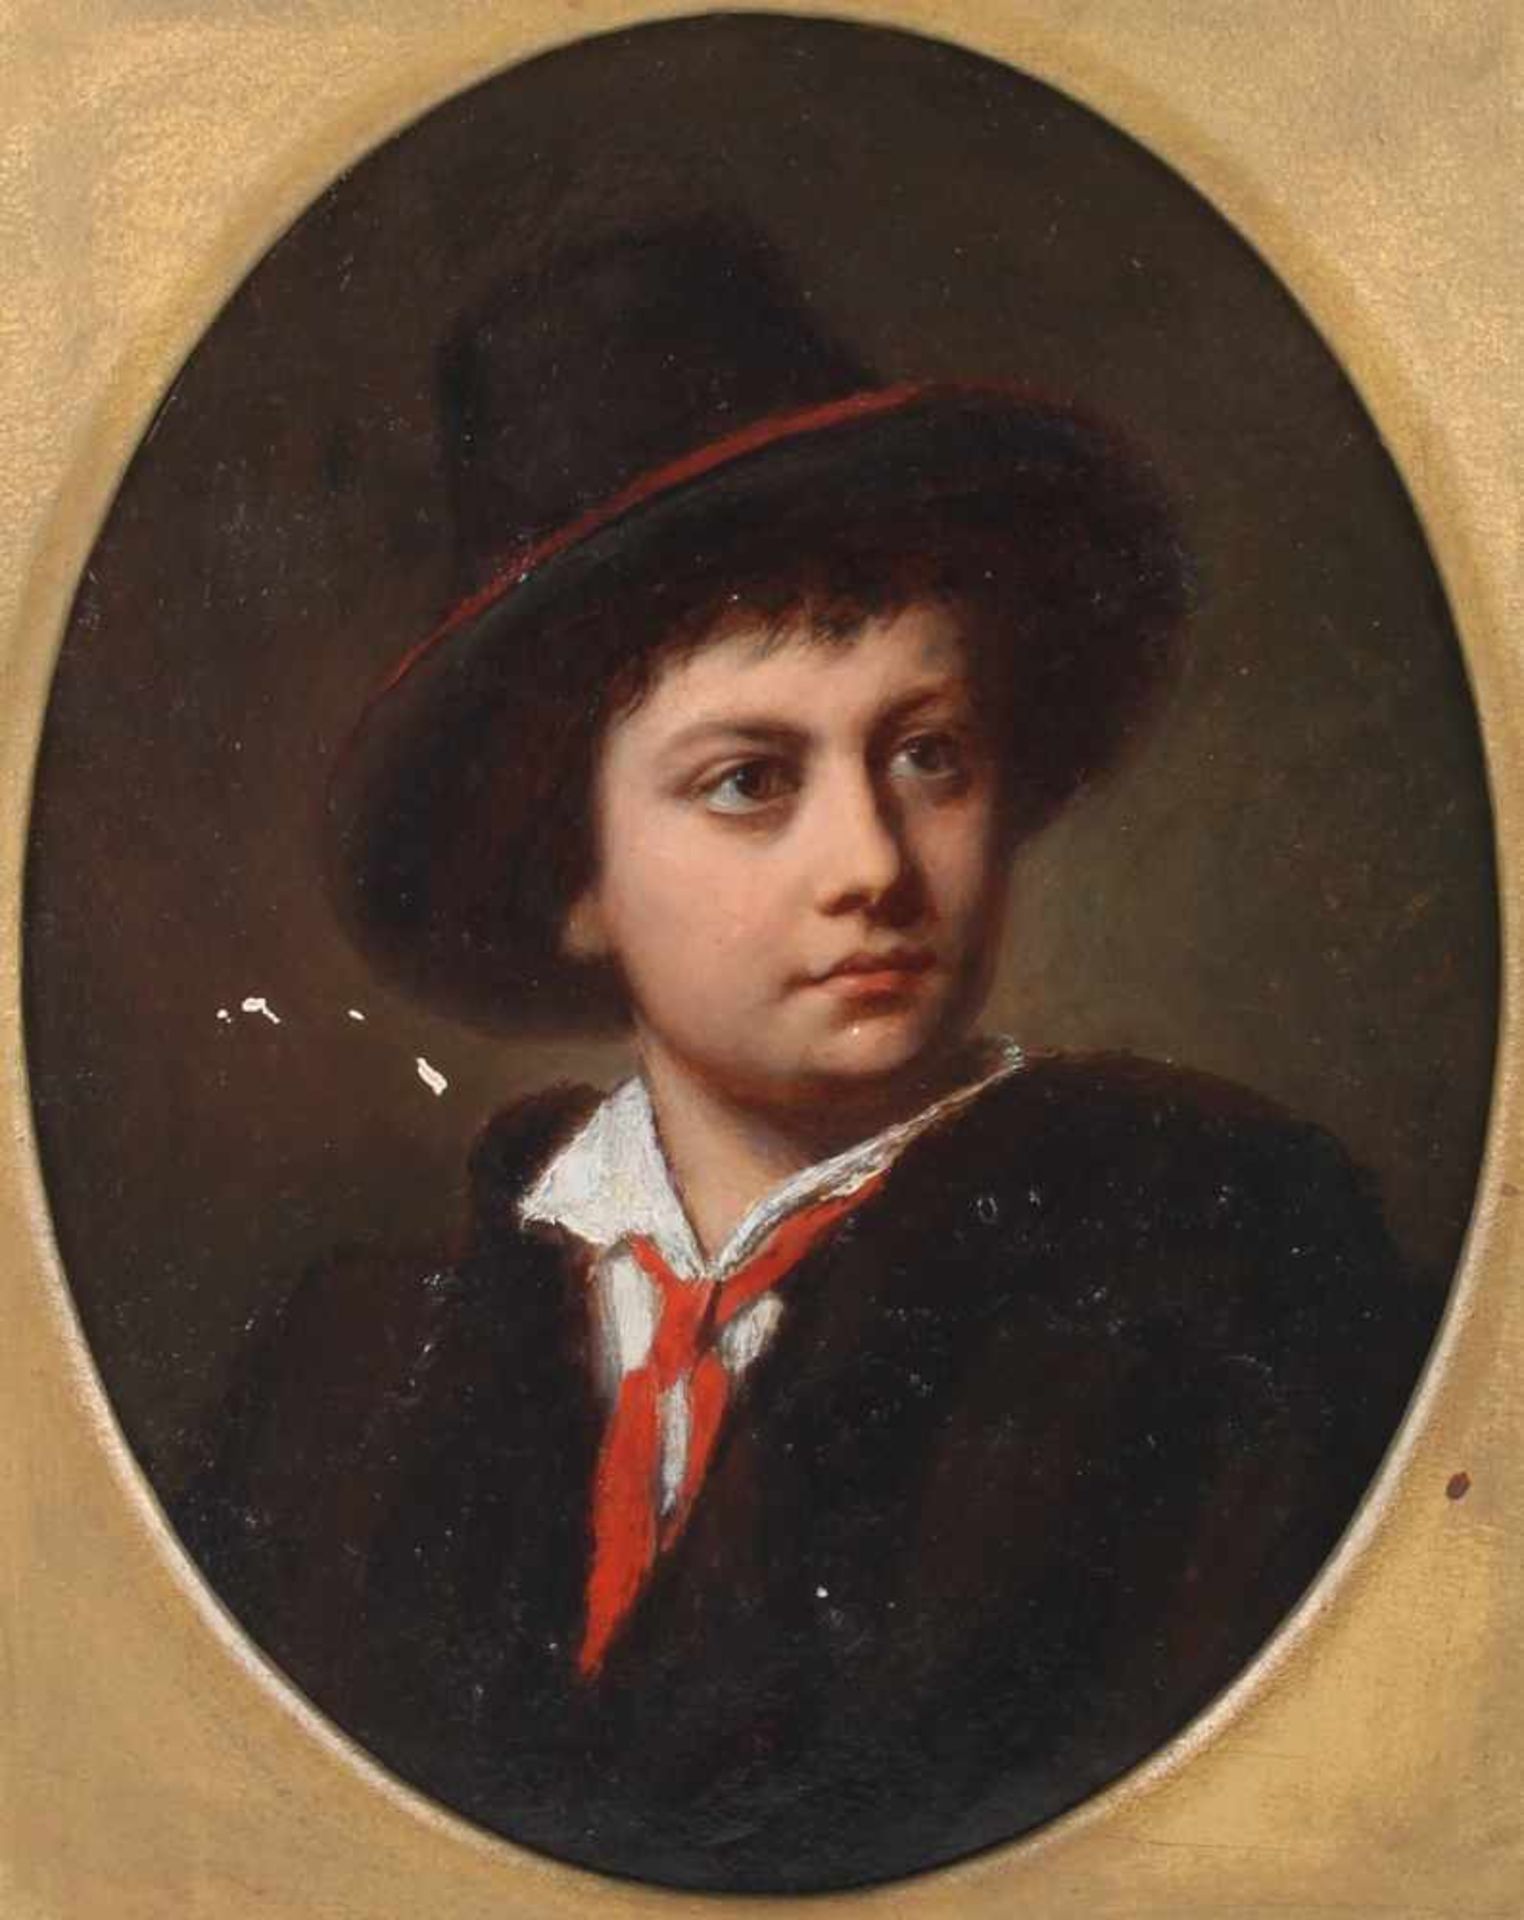 Kinderportrait um 1900, Child portrait around 1900,